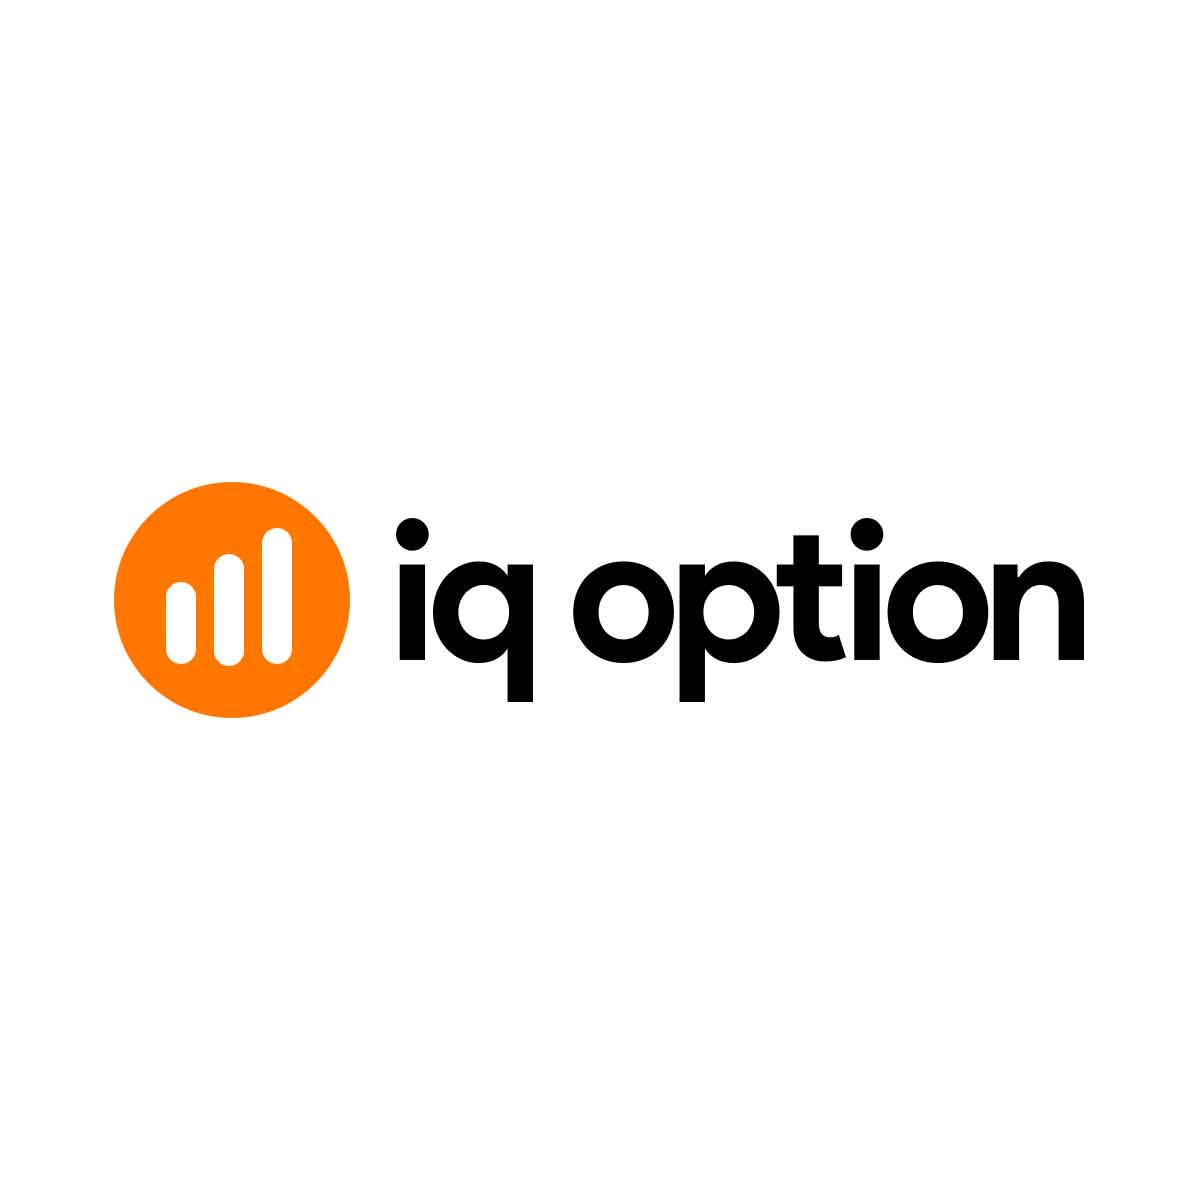 IQ option  logo